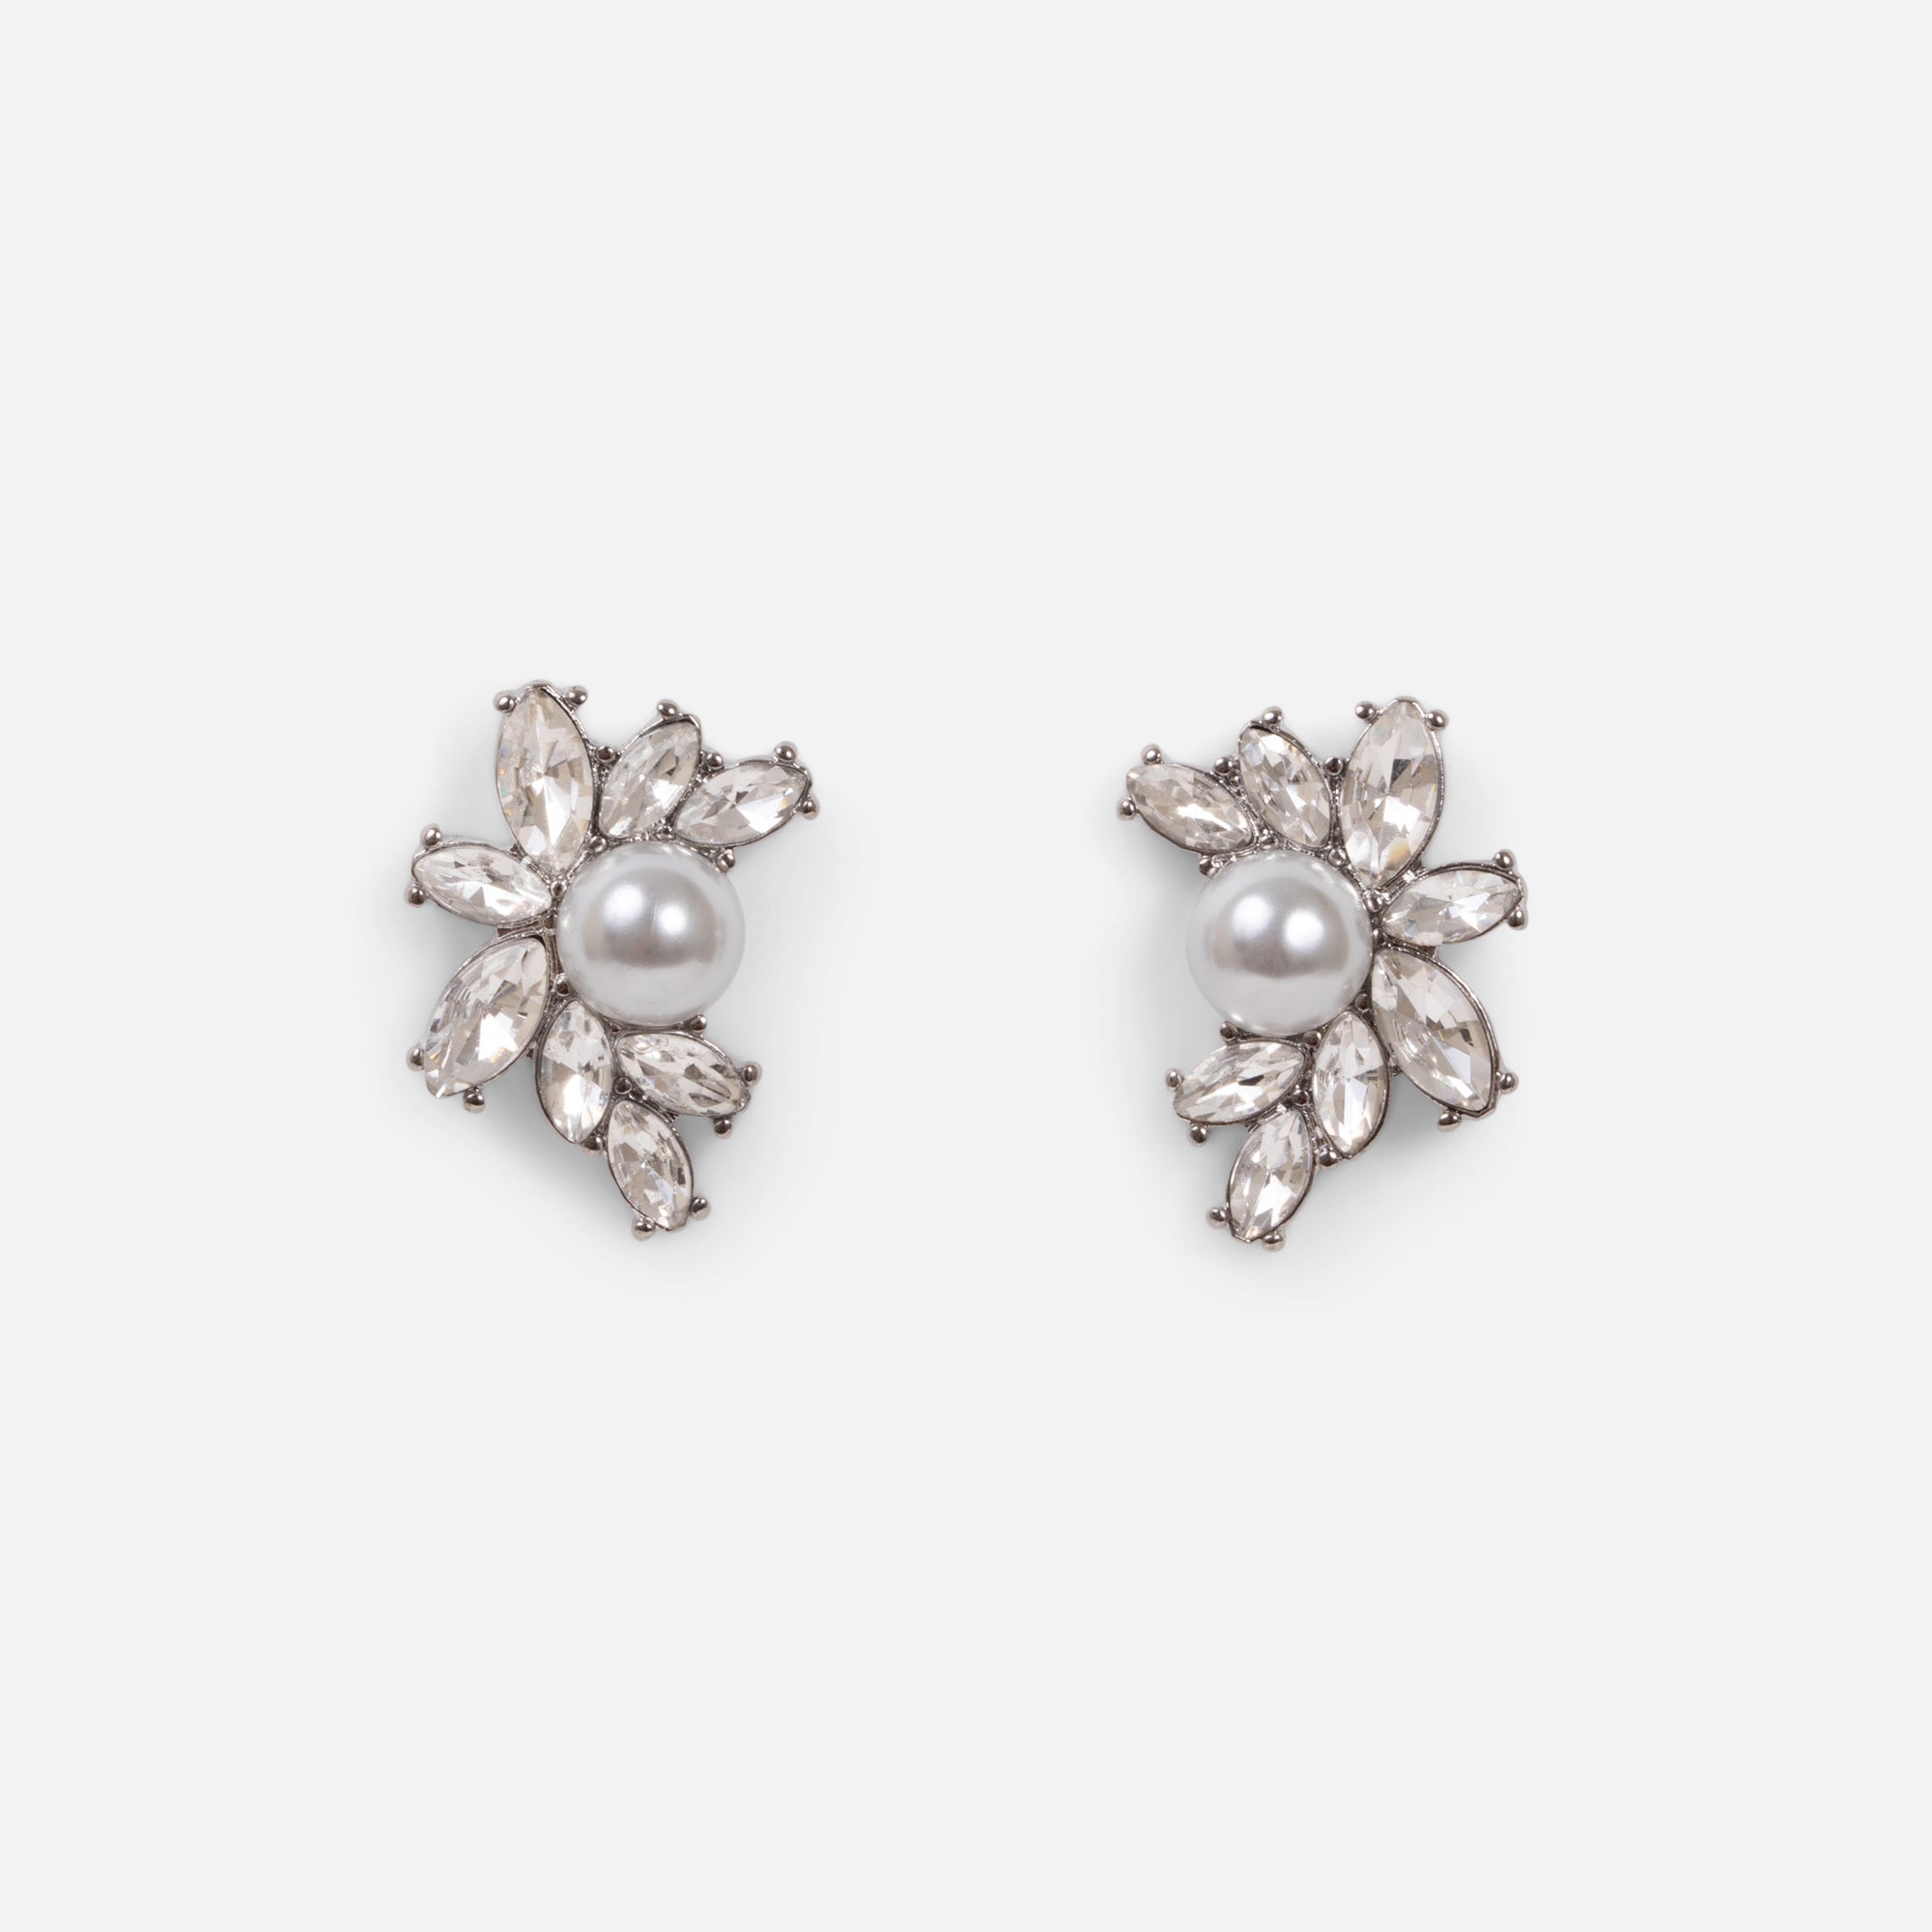 Boucles d'oreilles argentées fixes perle et pierres